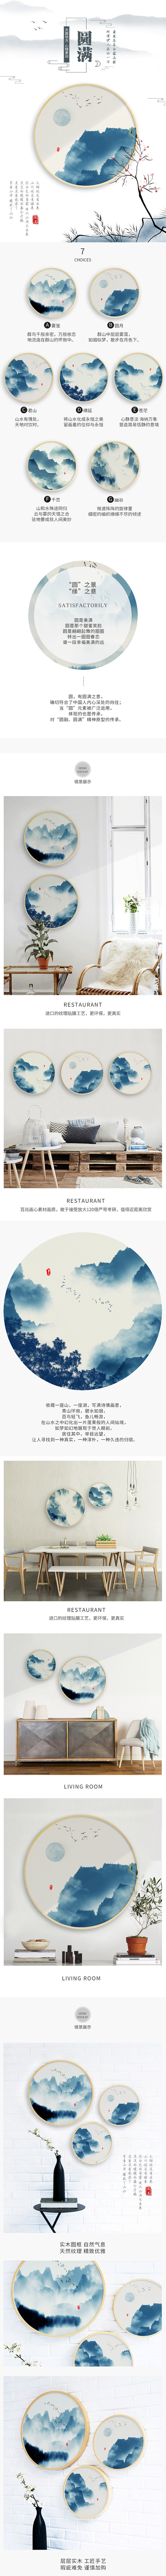 中国风圆形客厅挂画装饰画详情页psd模板